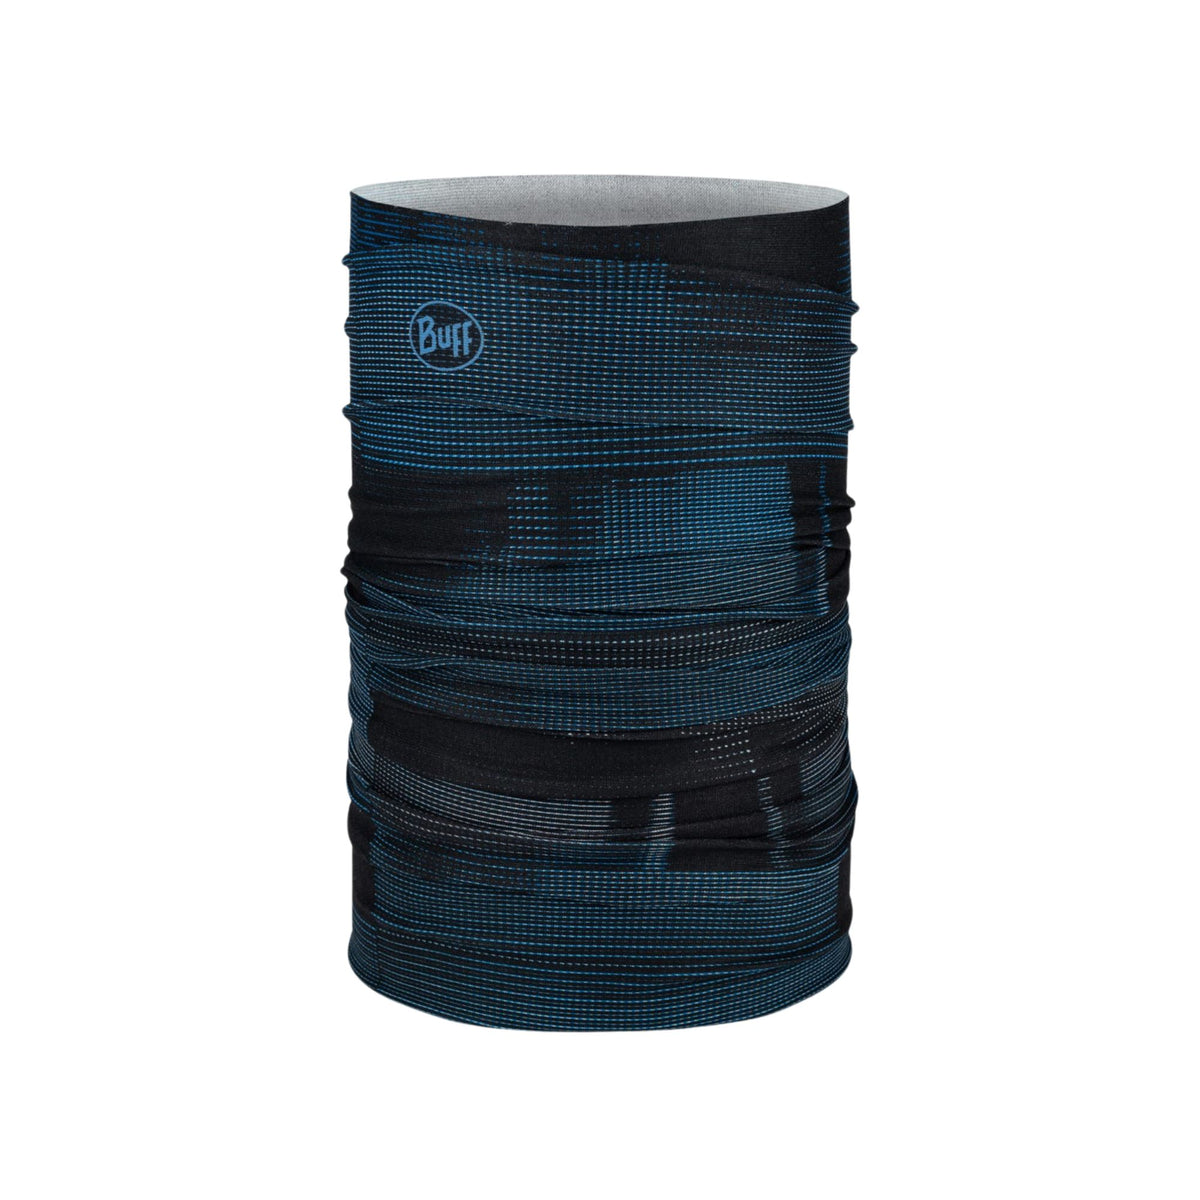 BUFF | COOLNET UV NECKWEAR - MALC NIGHT BLUE - Scaldacollo con protezione solare